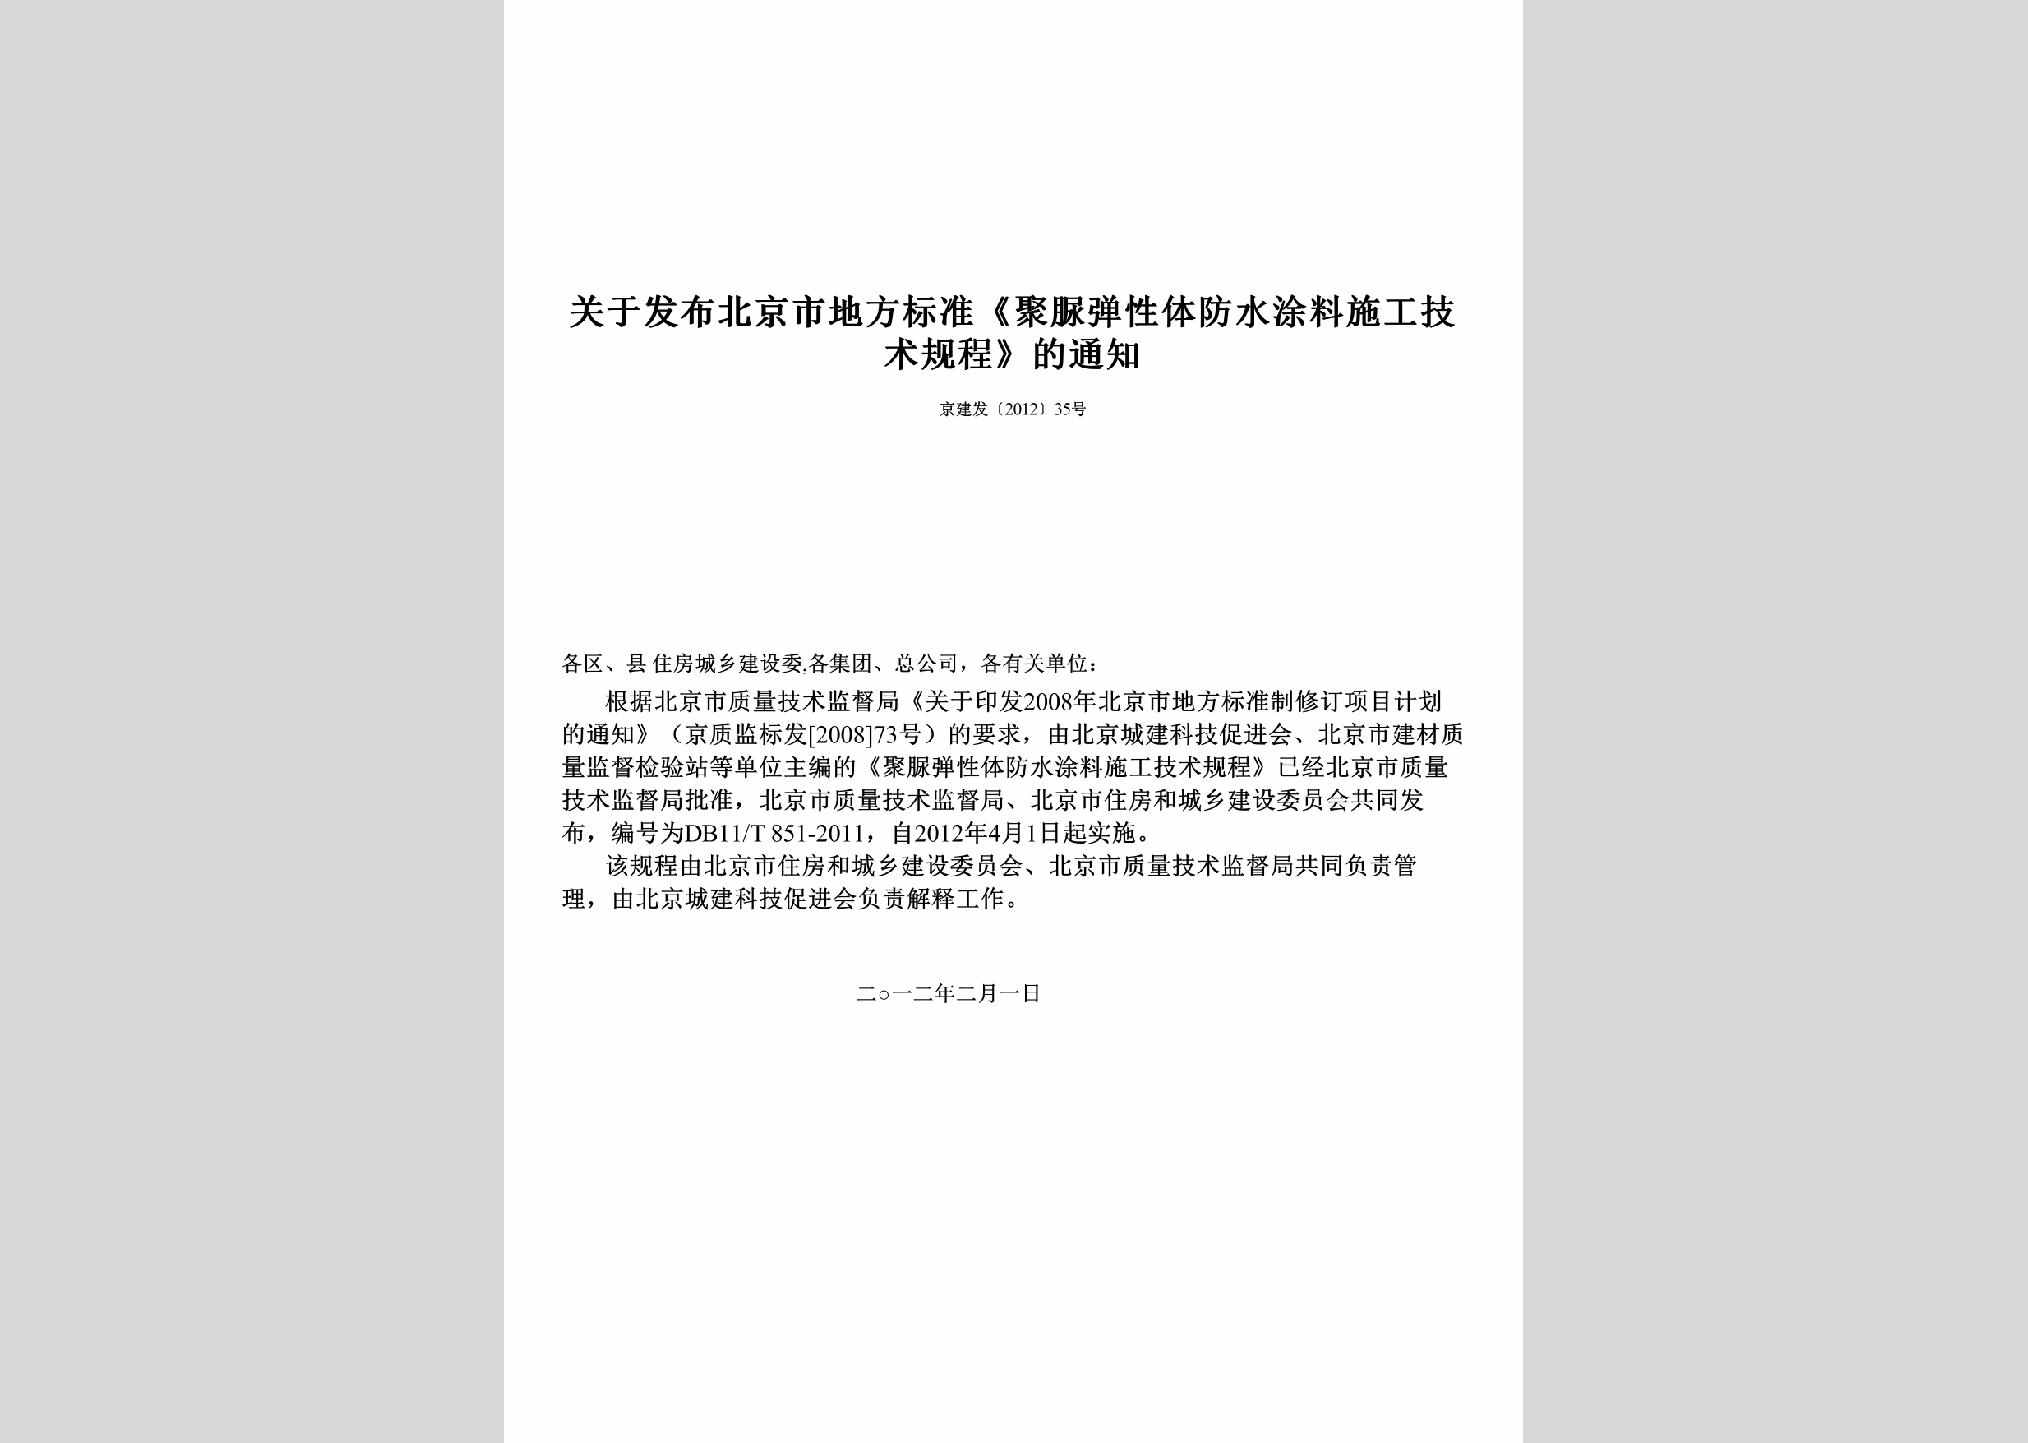 京建发[2012]35号：关于发布北京市地方标准《聚脲弹性体防水涂料施工技术规程》的通知